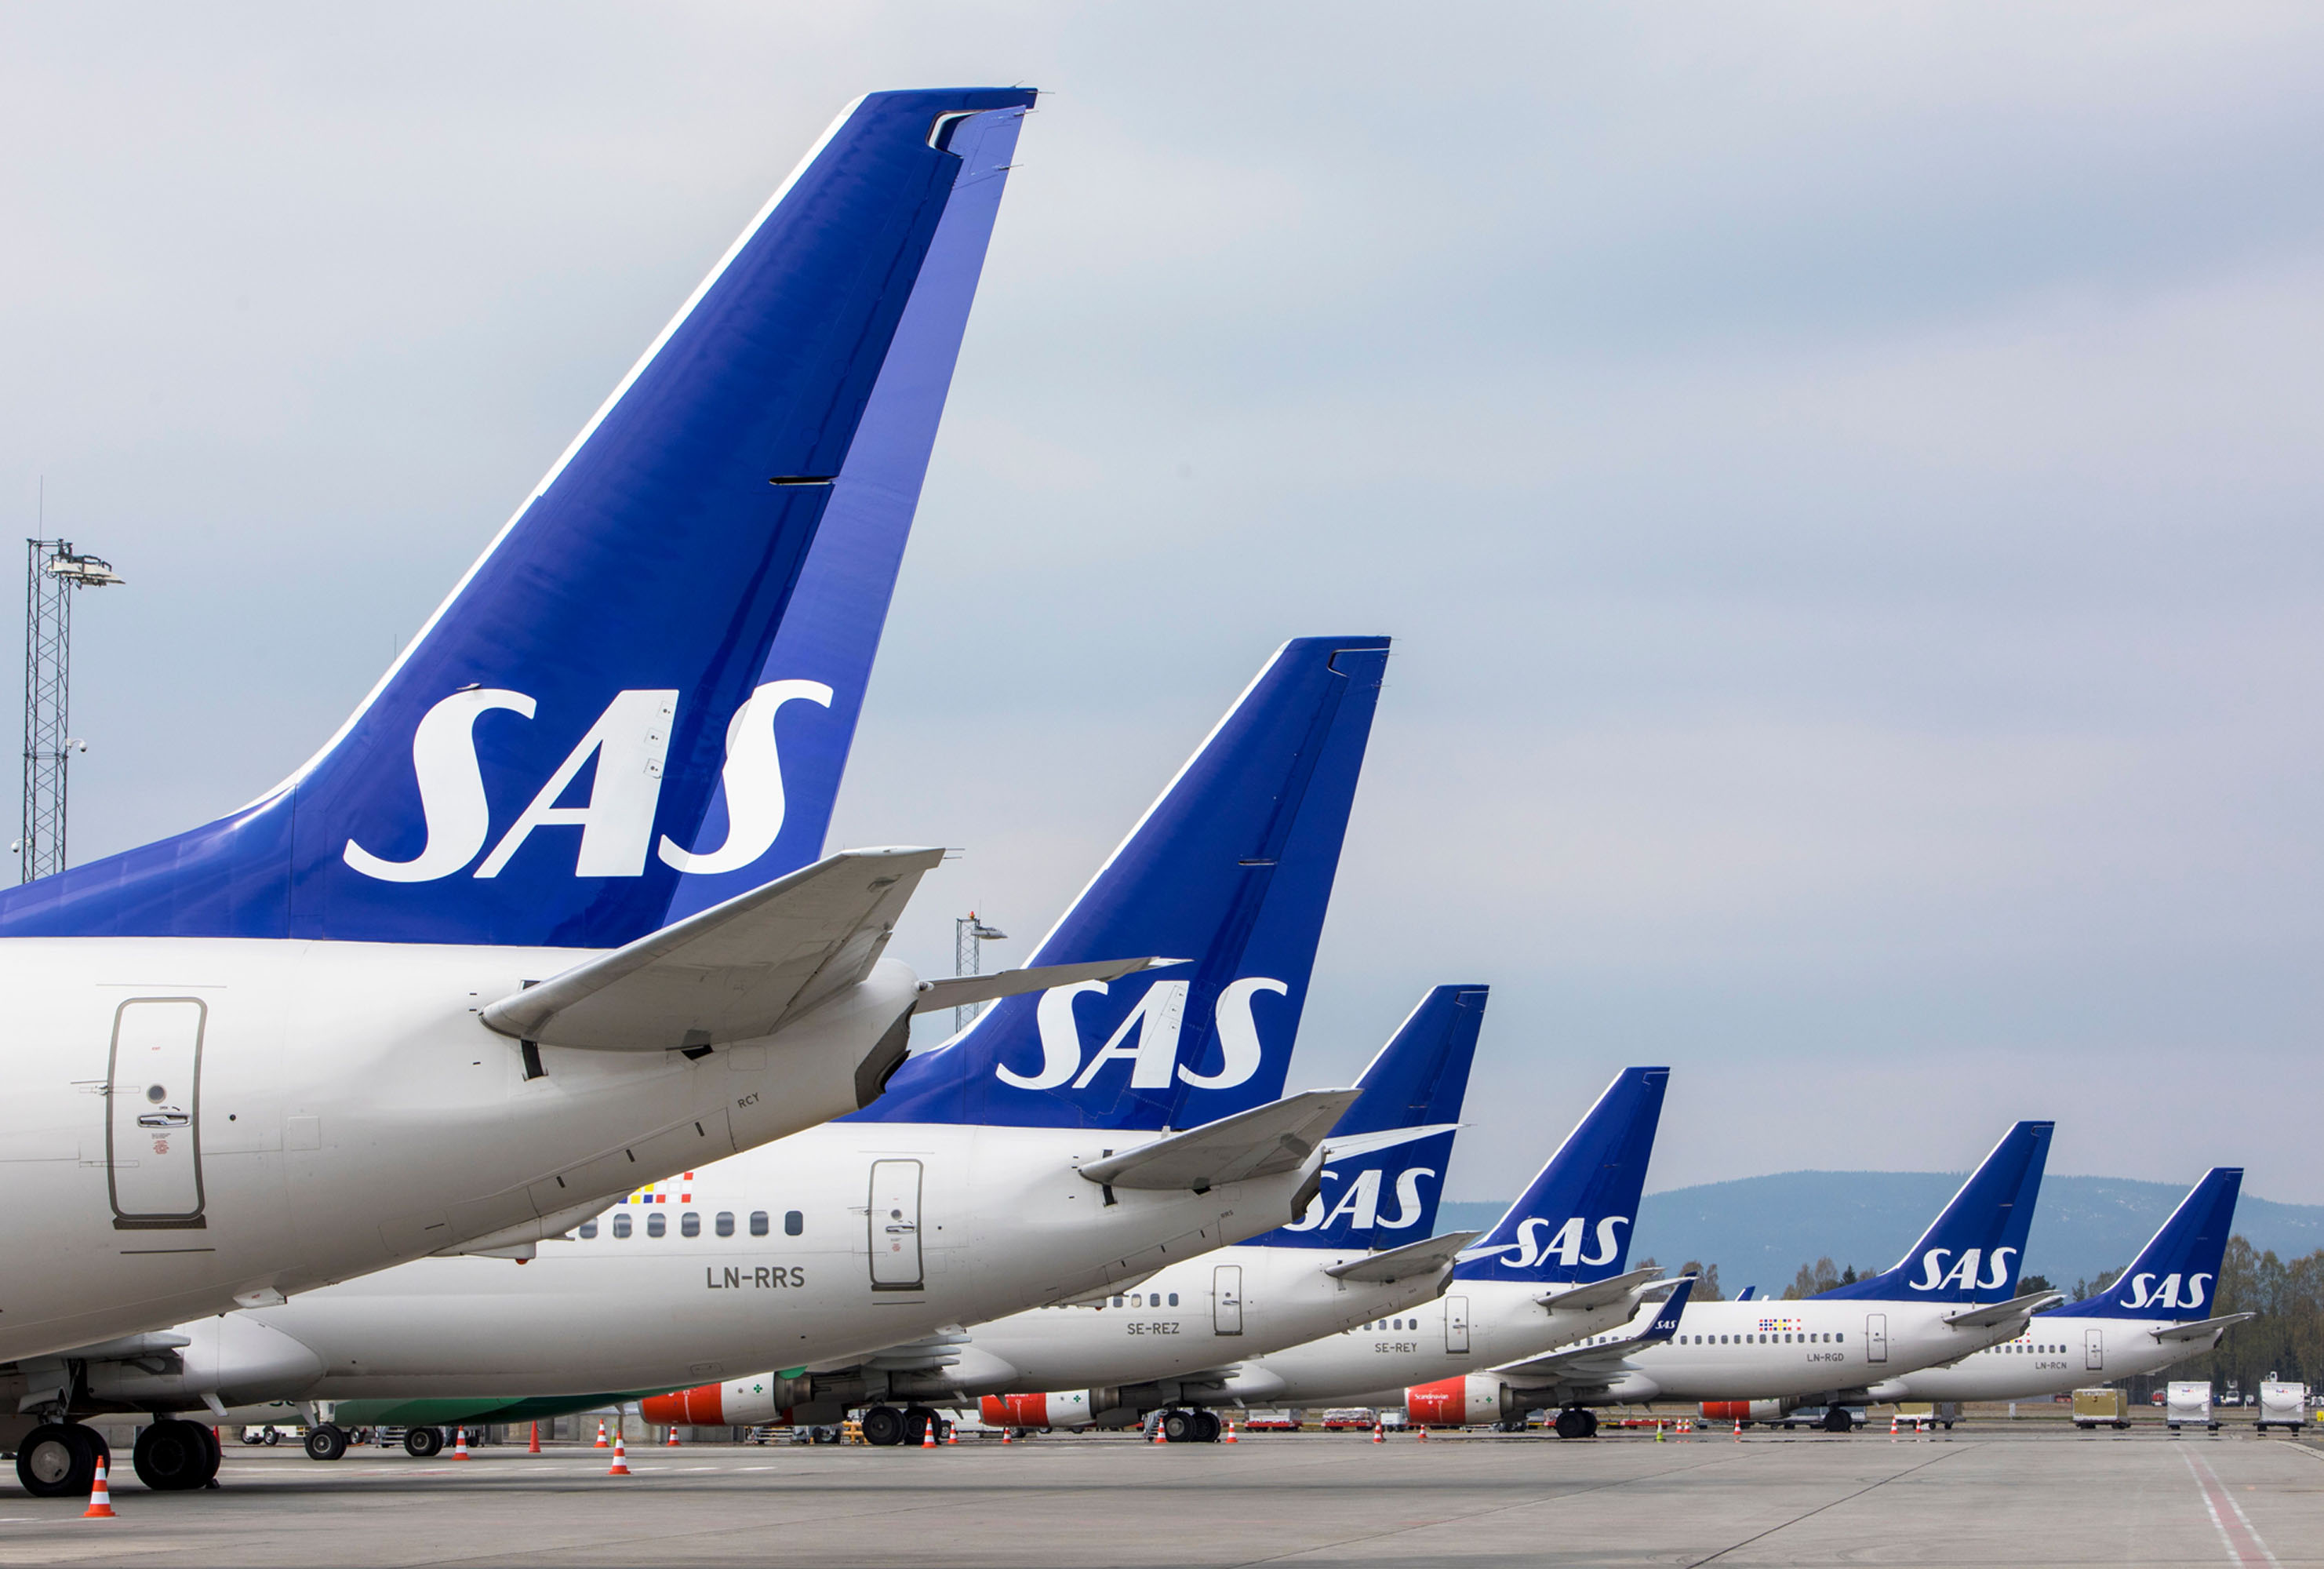 Airline SAS plans to cut half its workforce due to virus standstill